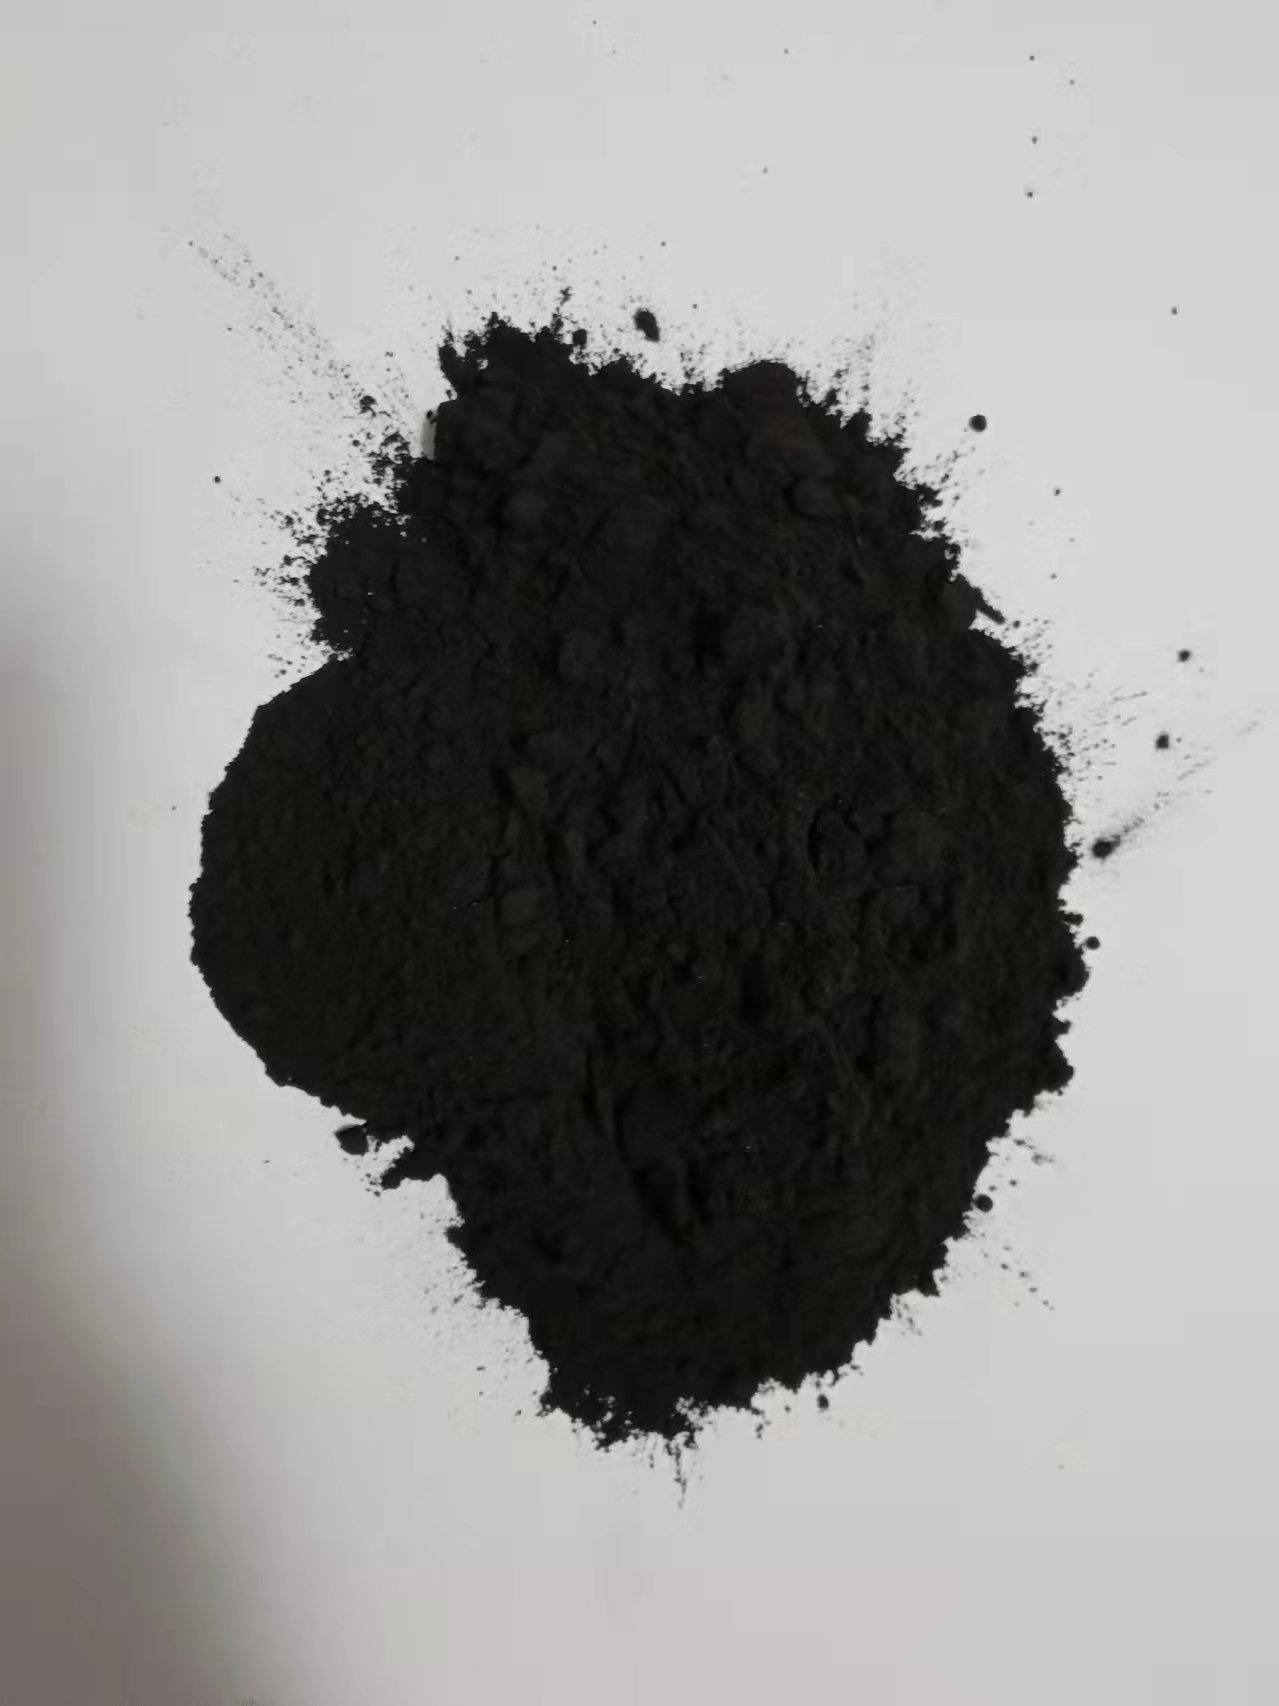 纯天然木炭粉超细食用烘焙木炭粉栗木炭粉鸽子保健砂排毒止俐碳粉